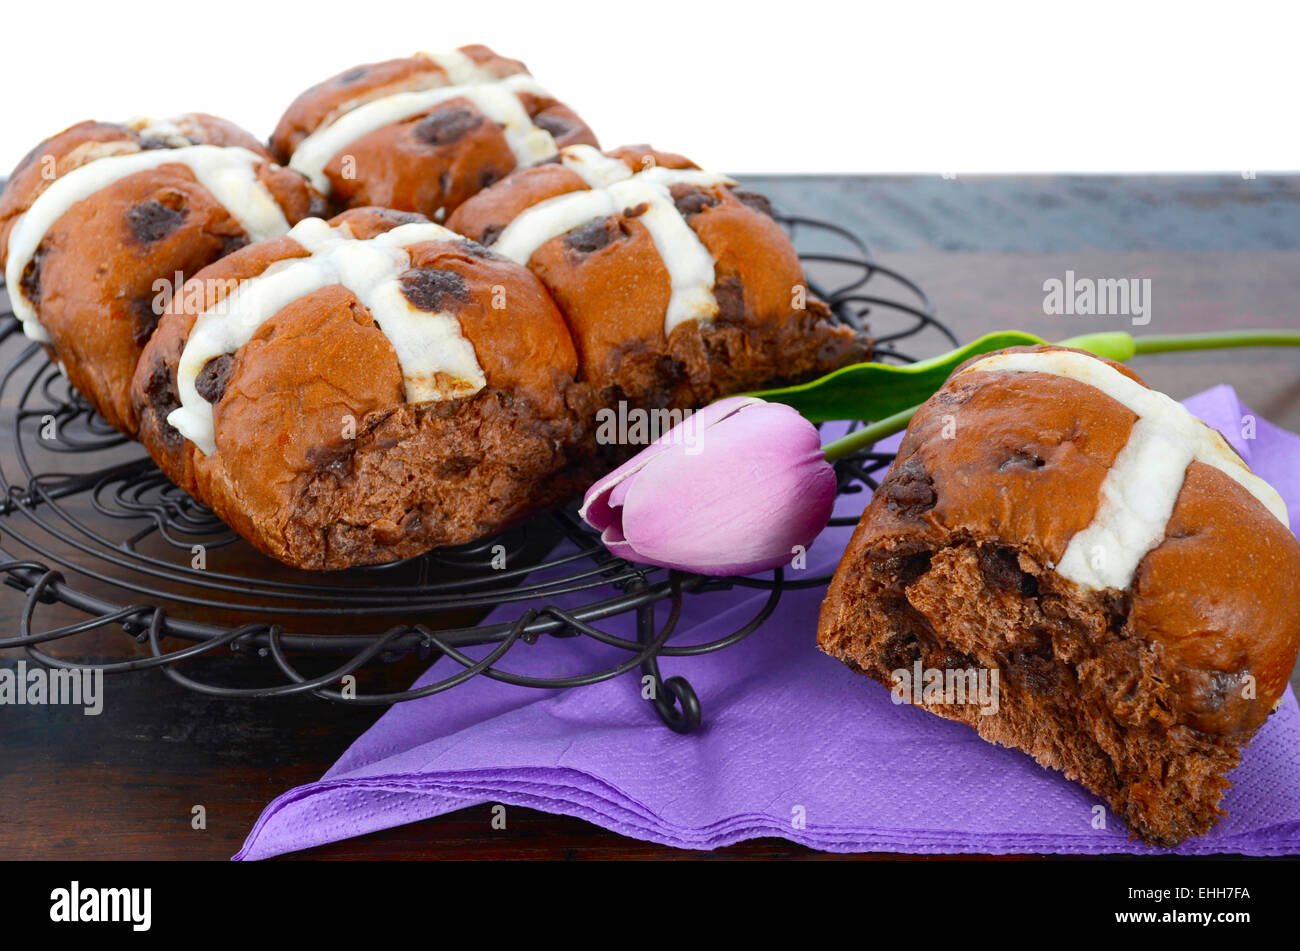 Pasqua a caldo al cioccolato ciambelle a croce in legno scuro tavolo. Foto Stock